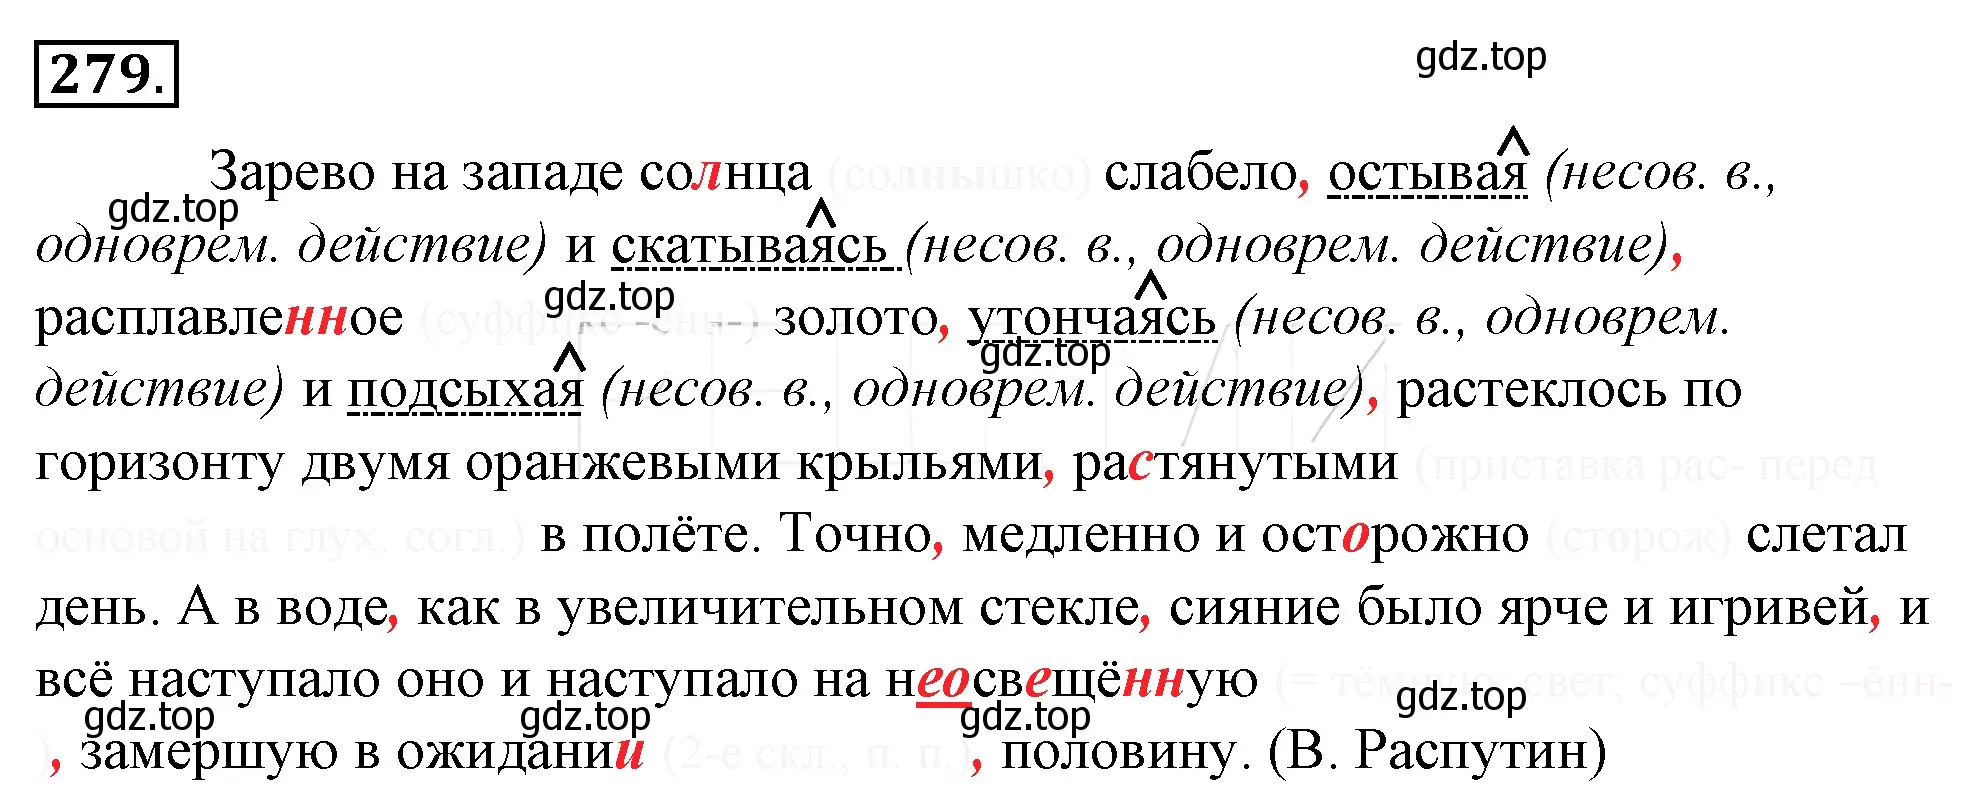 Решение 4. номер 303 (страница 282) гдз по русскому языку 10-11 класс Гольцова, Шамшин, учебник 1 часть